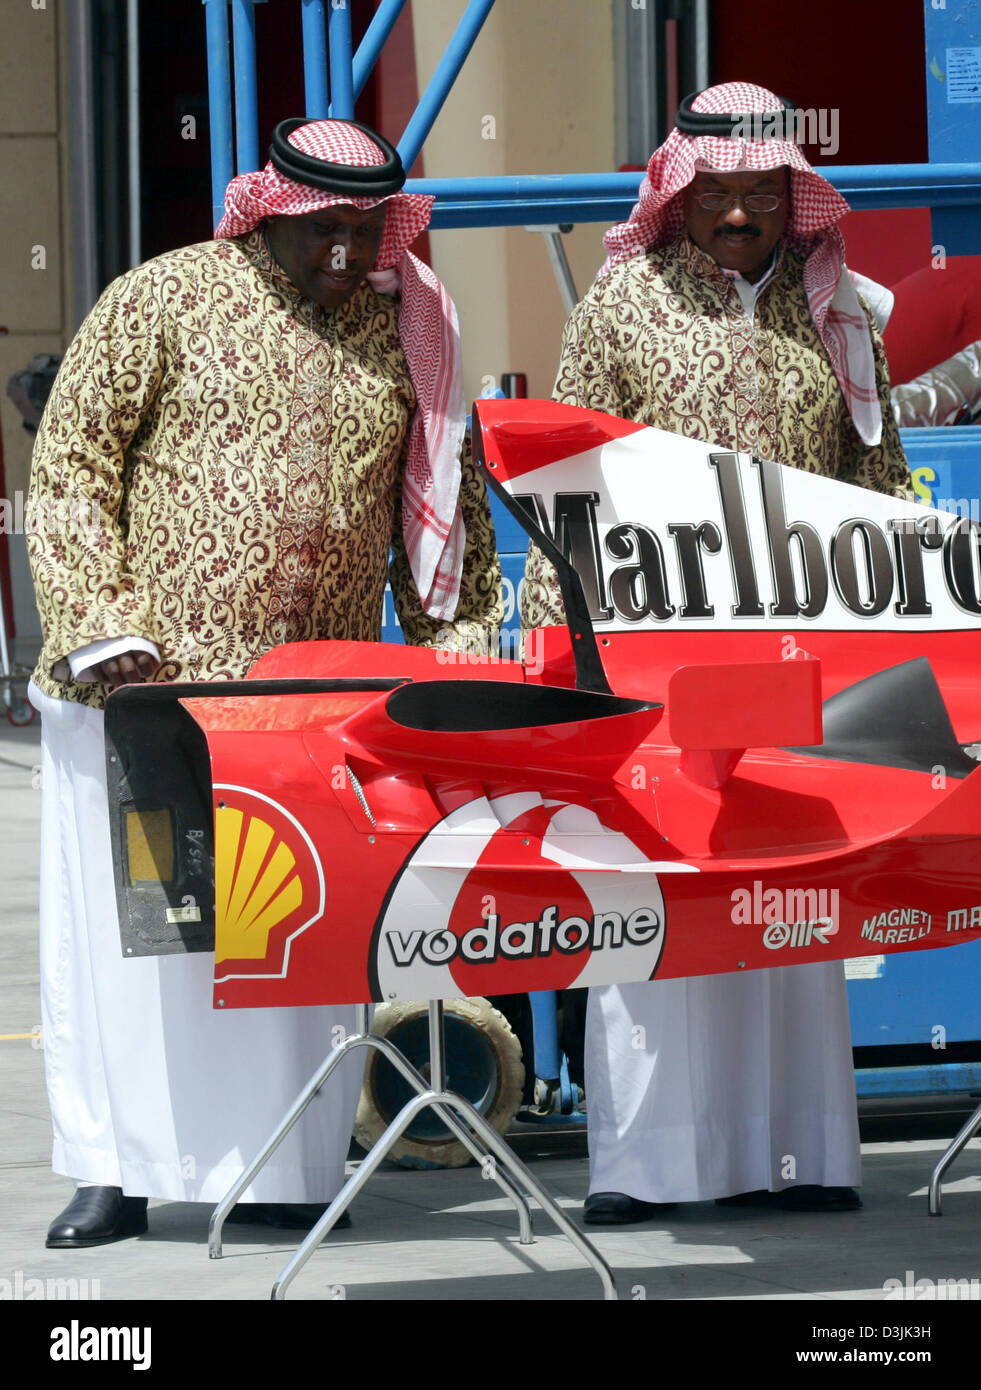 Zwei Scheichs sehen Sie die Motorabdeckung des neuen Ferrari Rennwagen in der Formel1 Rennstrecke in Bahrain, Mittwoch, 30. März 2005 in der Nähe von Manama, Bahrain. Der Grand Prix von Bahrain stattfinden am Sonntag, 3. April 2005. Stockfoto